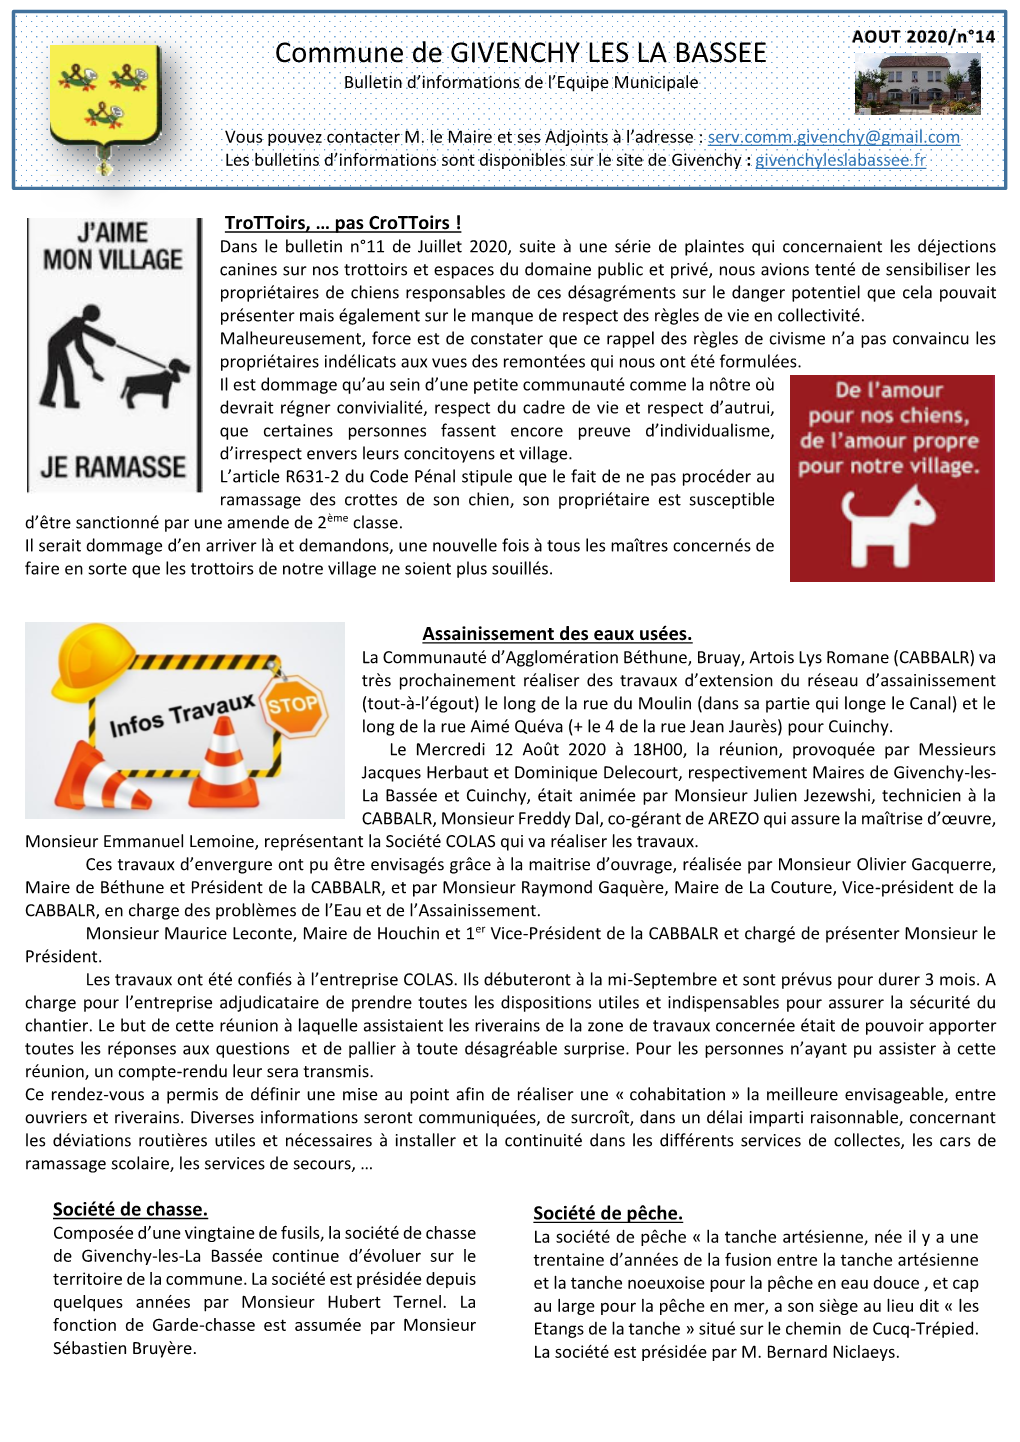 Commune De GIVENCHY LES LA BASSEE Bulletin D’Informations De L’Equipe Municipale